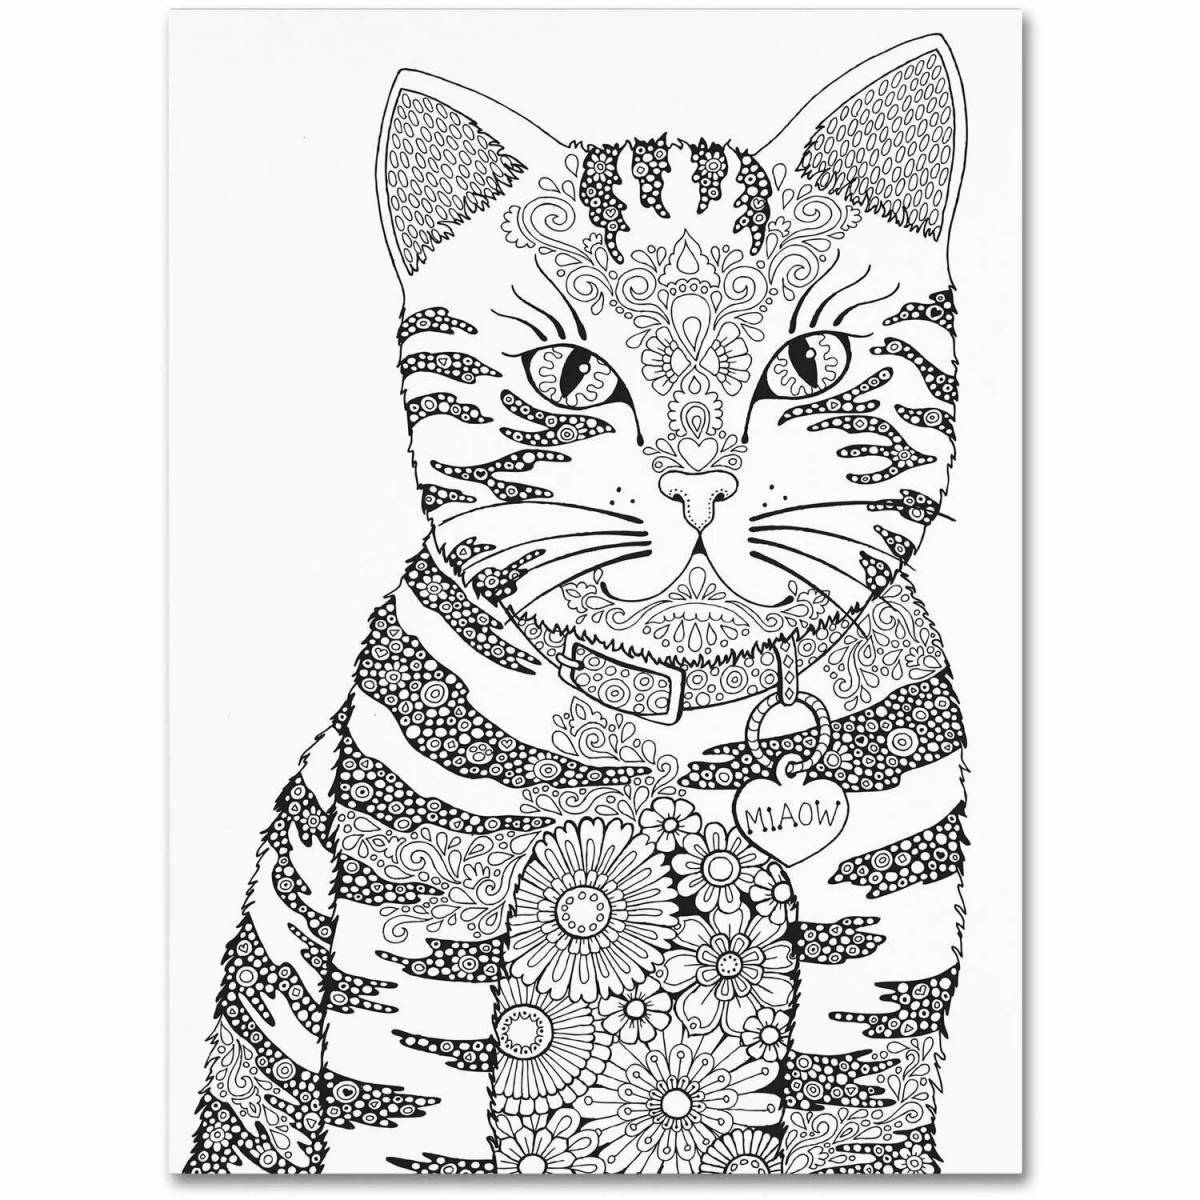 Юмористическая раскраска сложный кот